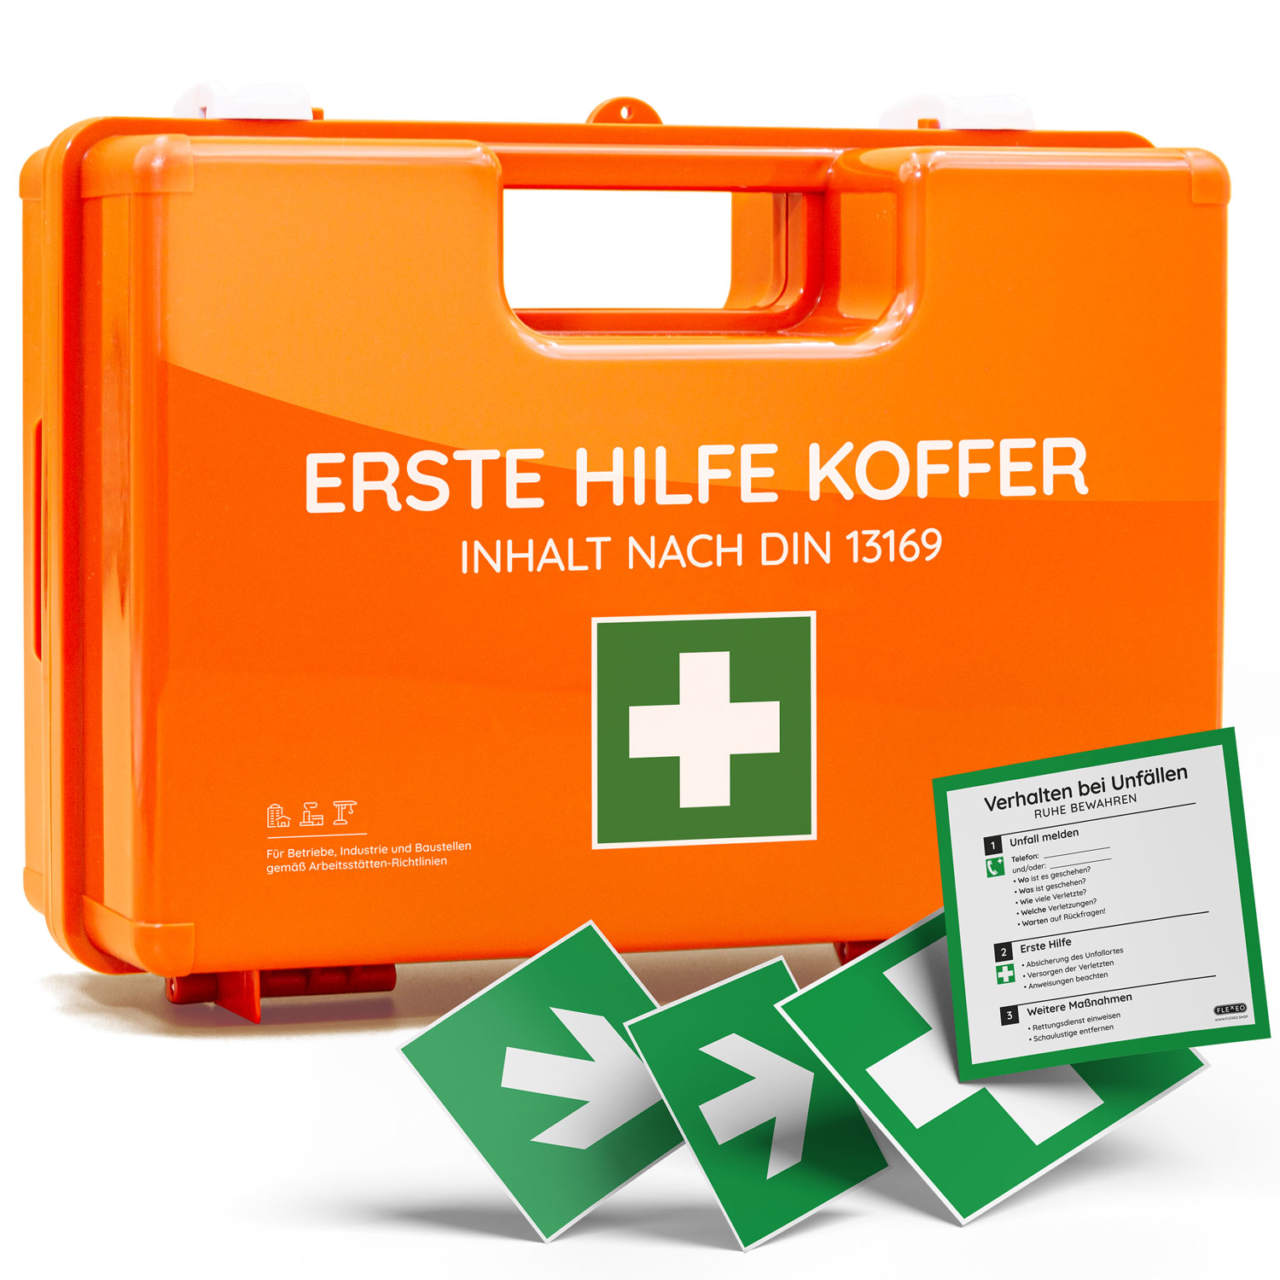 Erste-Hilfe-Koffer DUO Kinder + Erwachsene, orange, 43 x 15 x 33,5